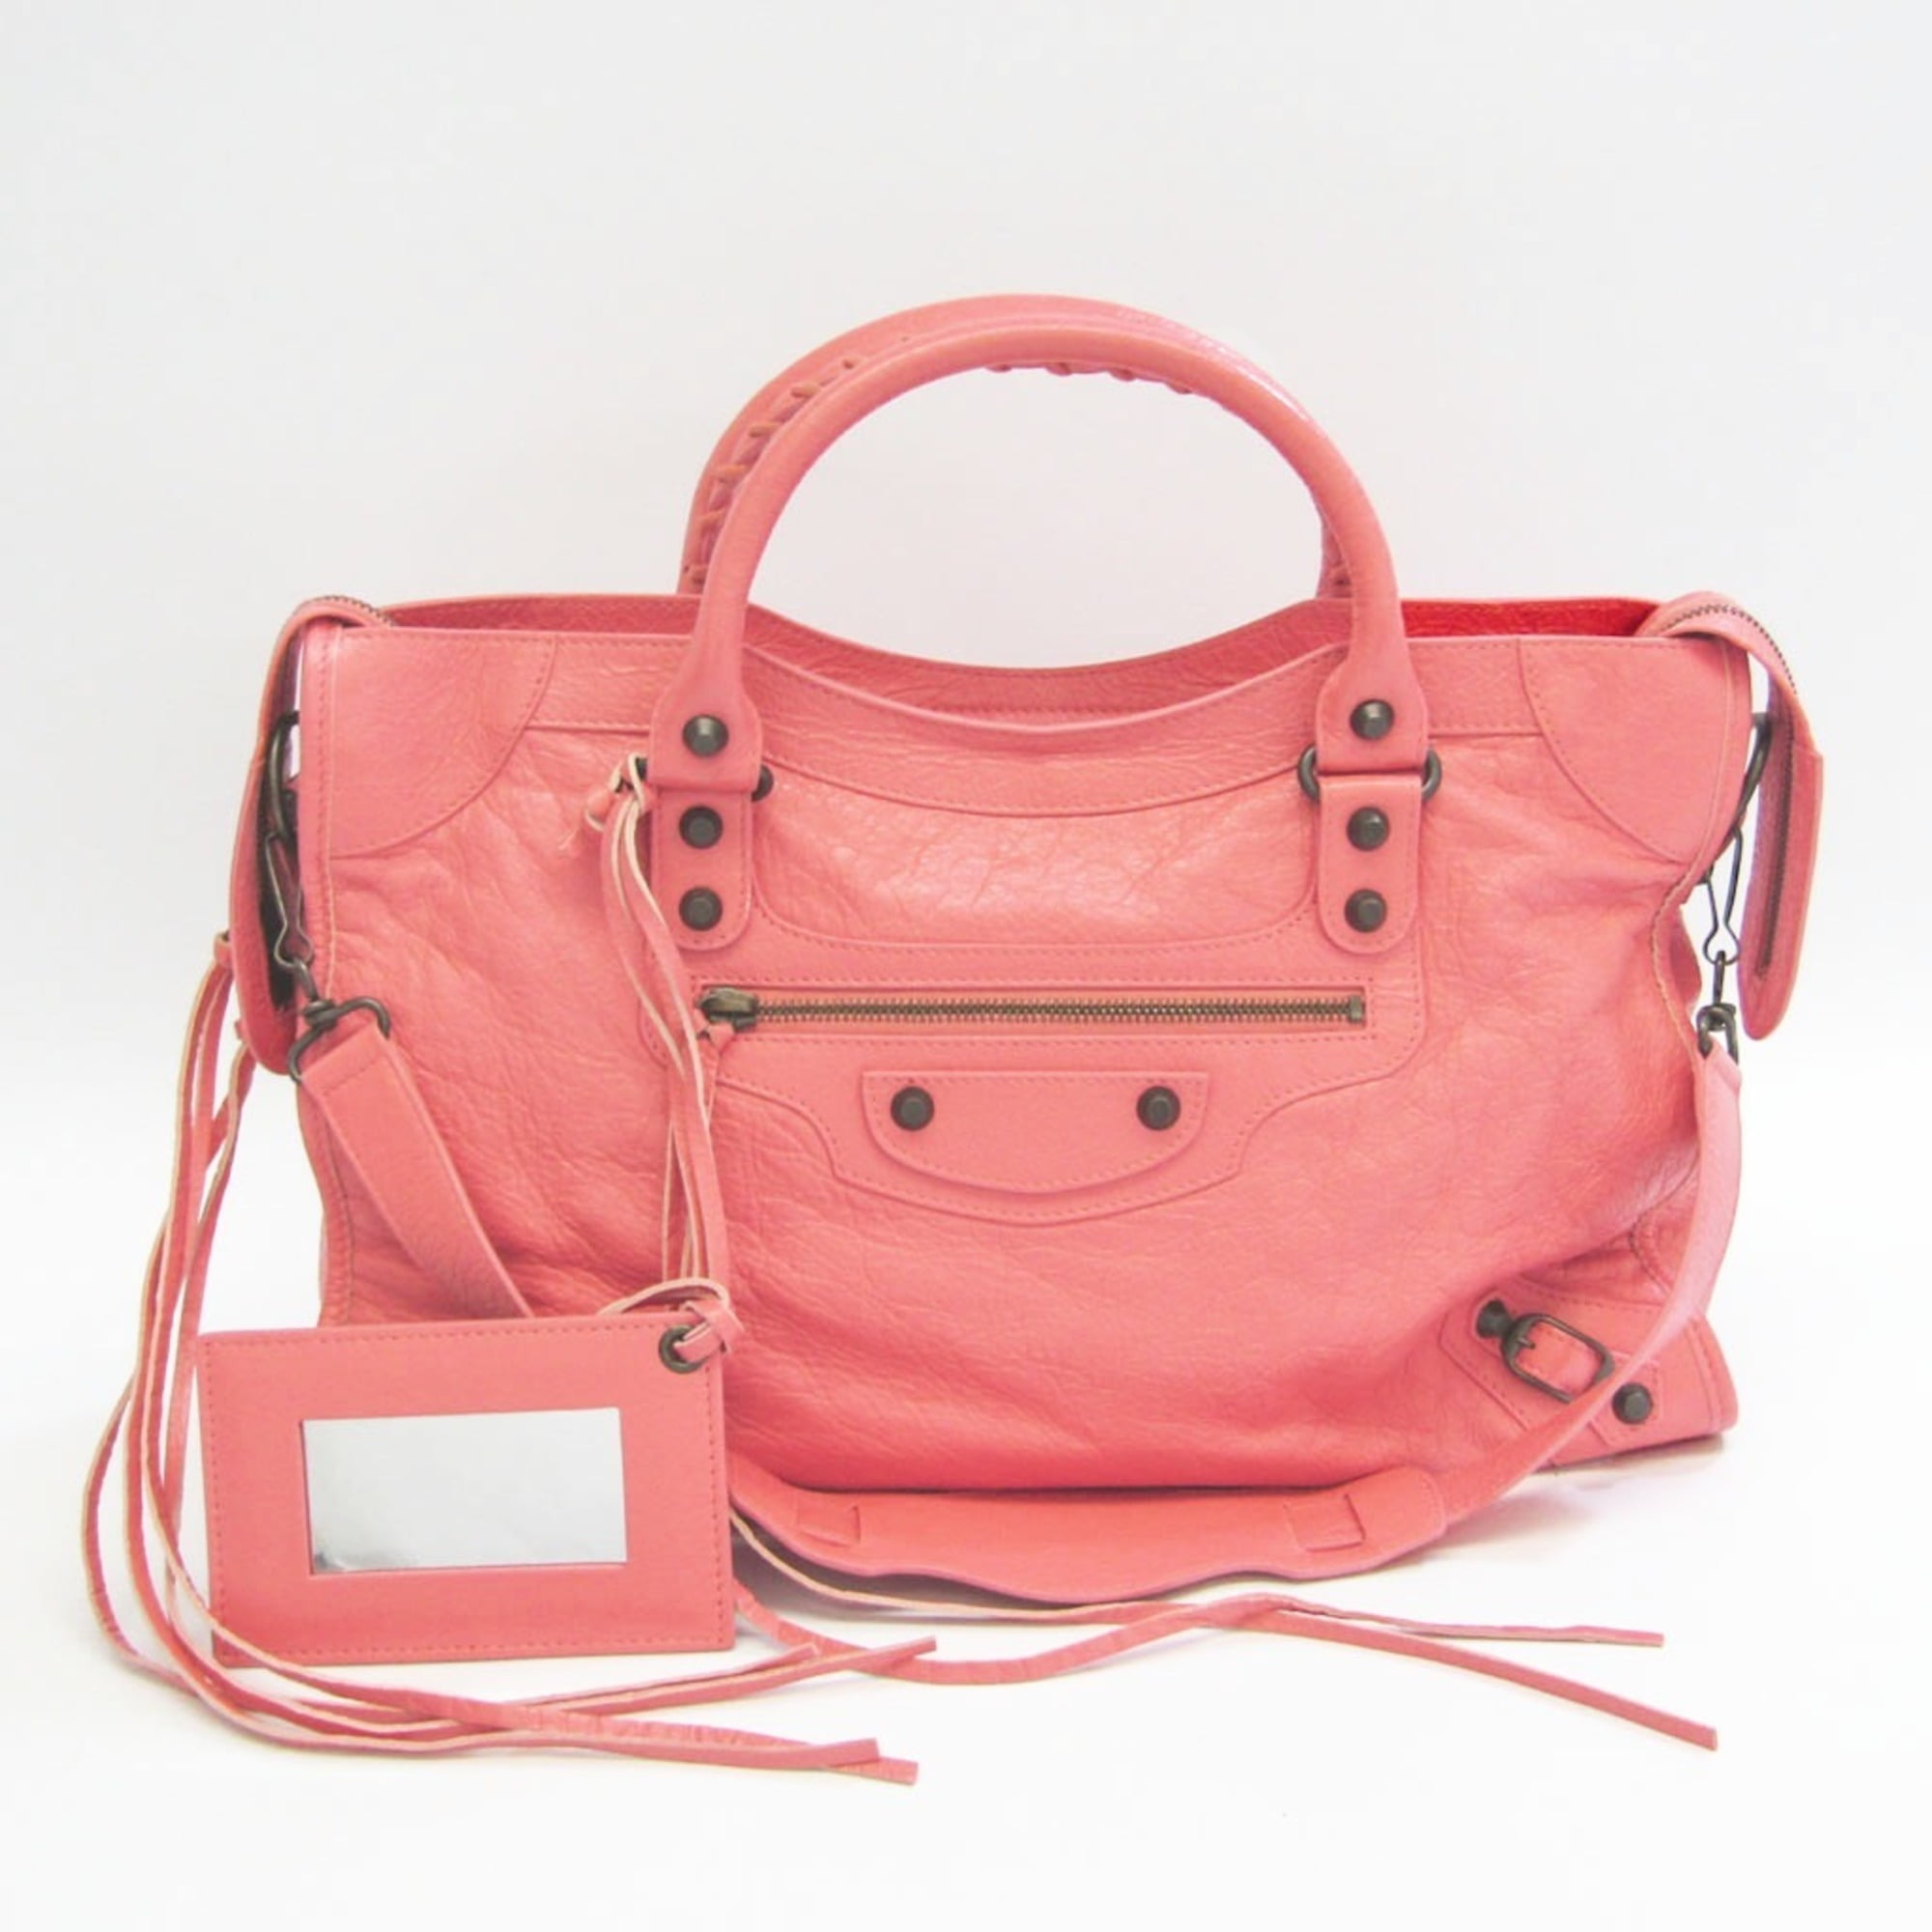 Authenticated used Balenciaga City 115748 Women's Leather Handbag,Shoulder Bag Light Pink, Adult Unisex, Size: (HxWxD): 23cm x 38cm x 14cm / 9.05'' x